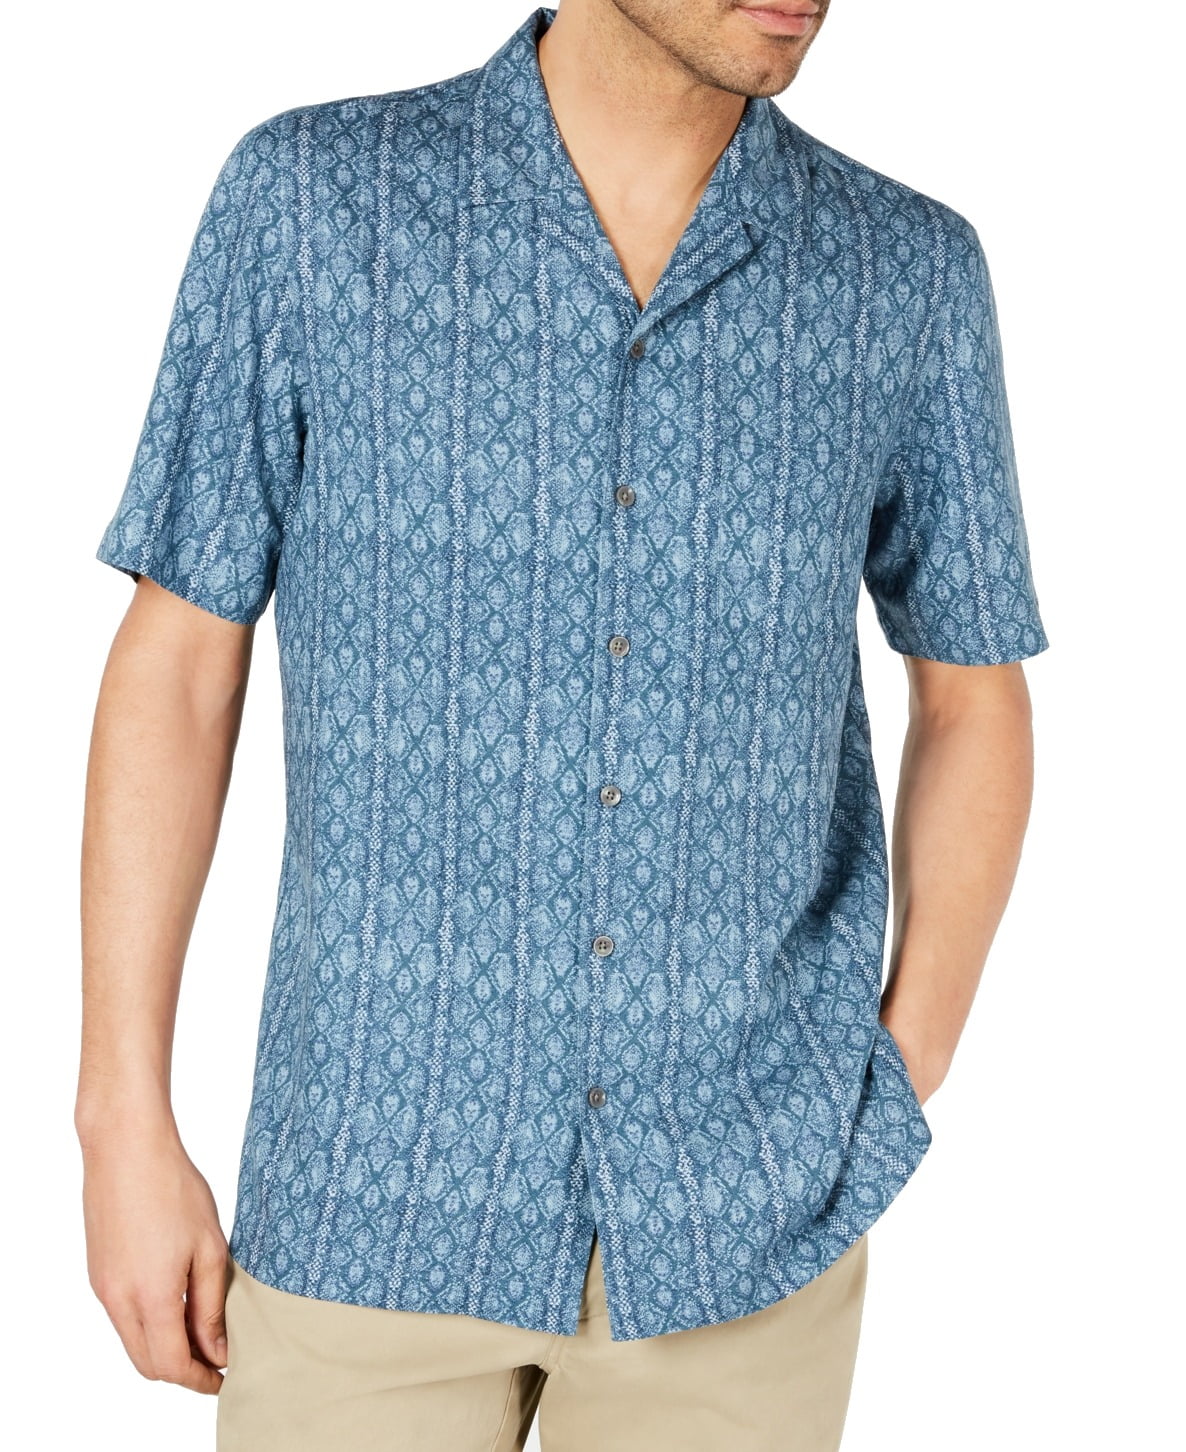 Mens Shirt Teal Combo Blue Small Button Down Silk $65 S - Walmart.com ...